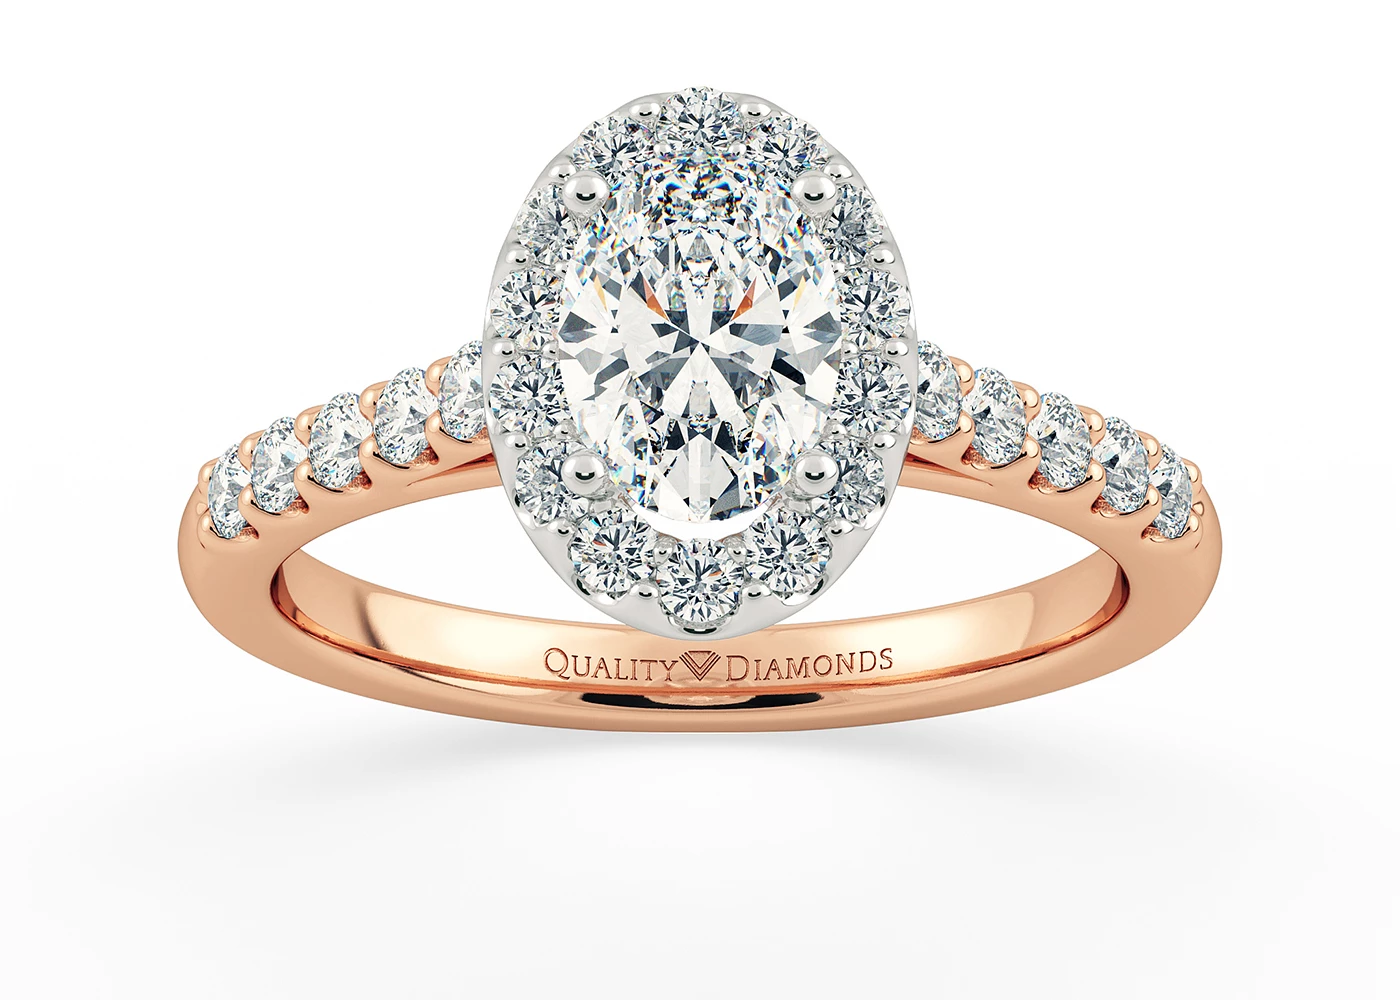 Half Carat Oval Halo Diamond Ring in 18K Rose Gold